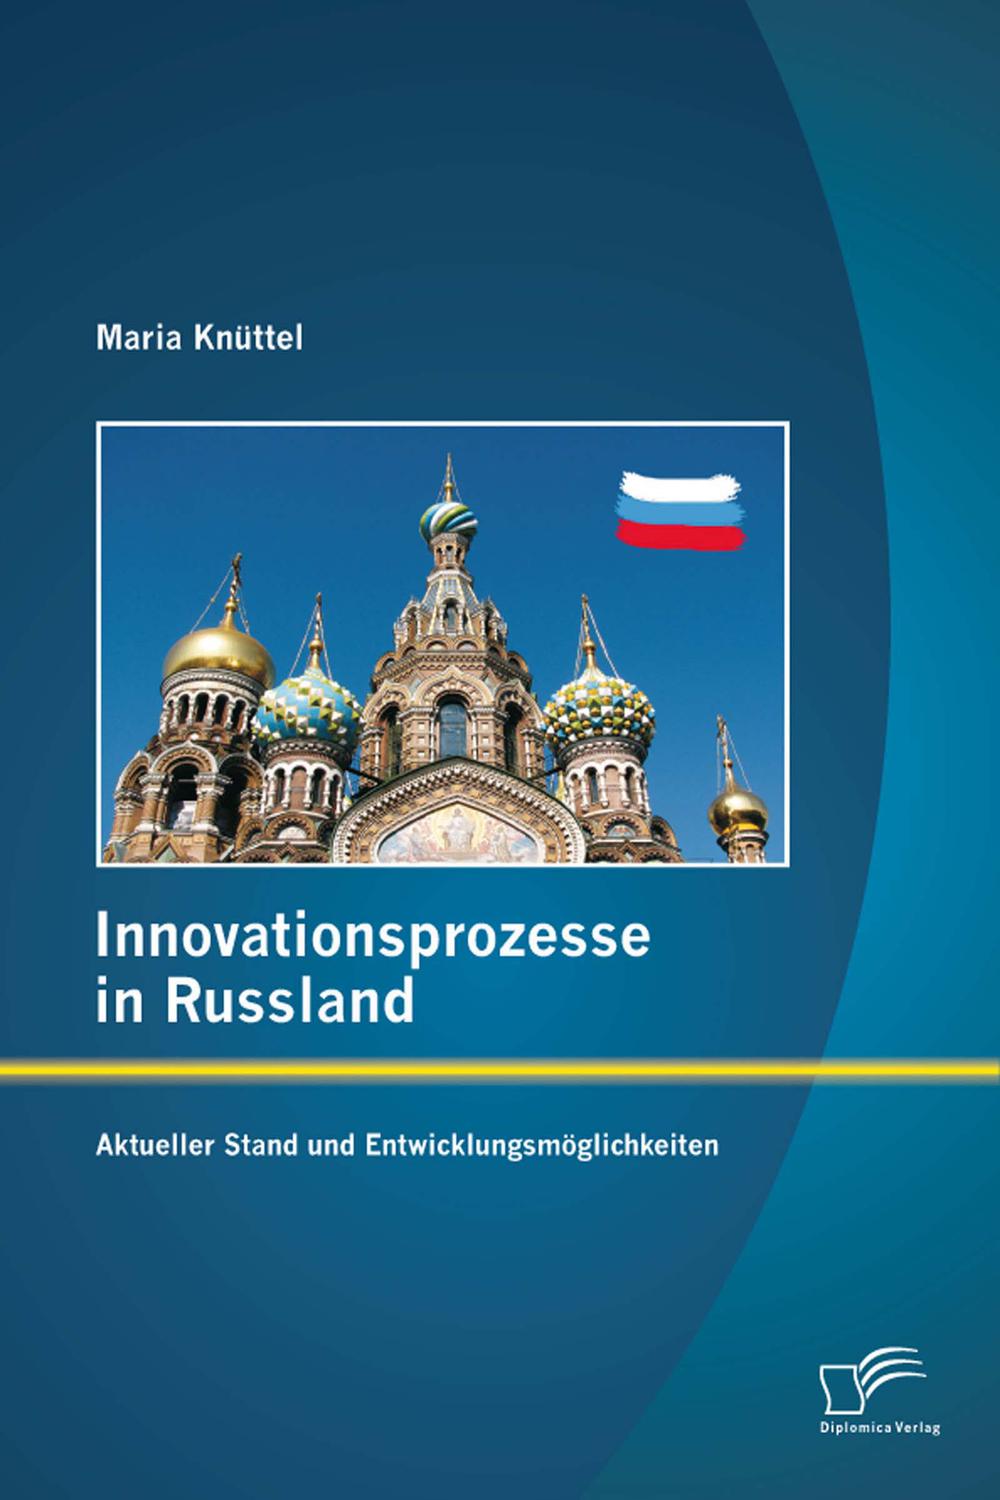 Innovationsprozesse in Russland - Aktueller Stand und Entwicklungsmöglichkeiten - Maria Knüttel